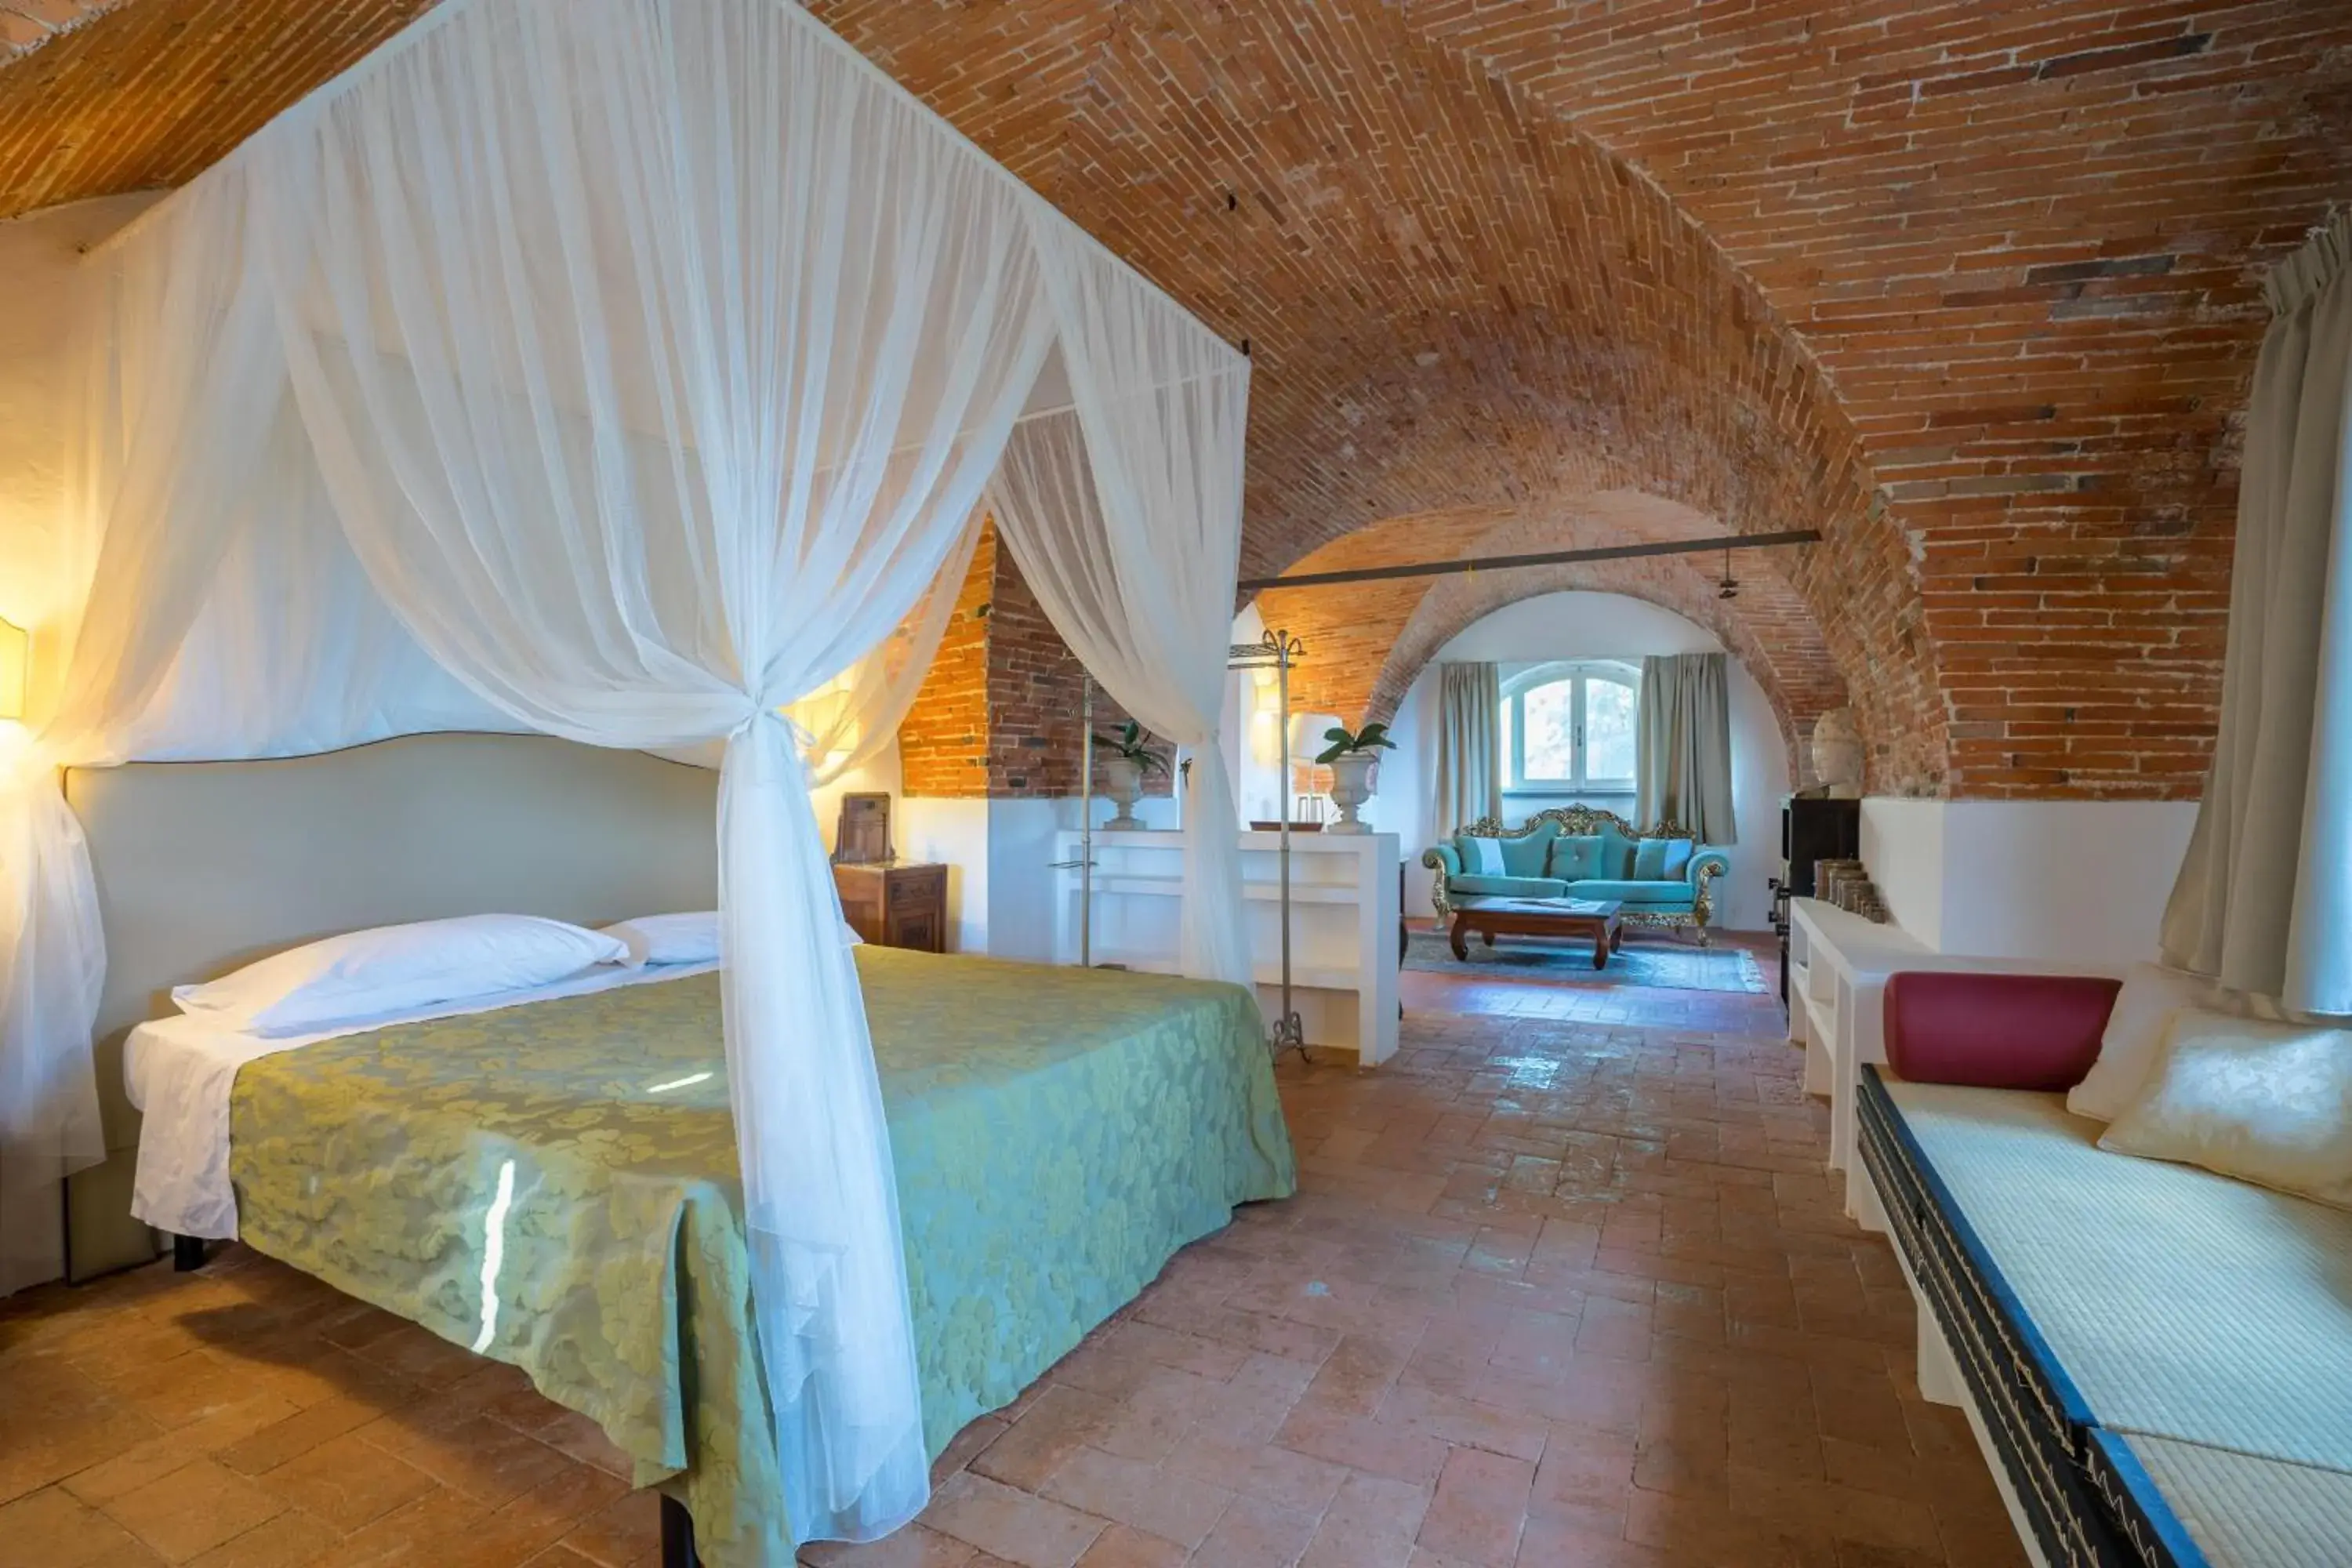 Photo of the whole room in Hotel Villa Sermolli